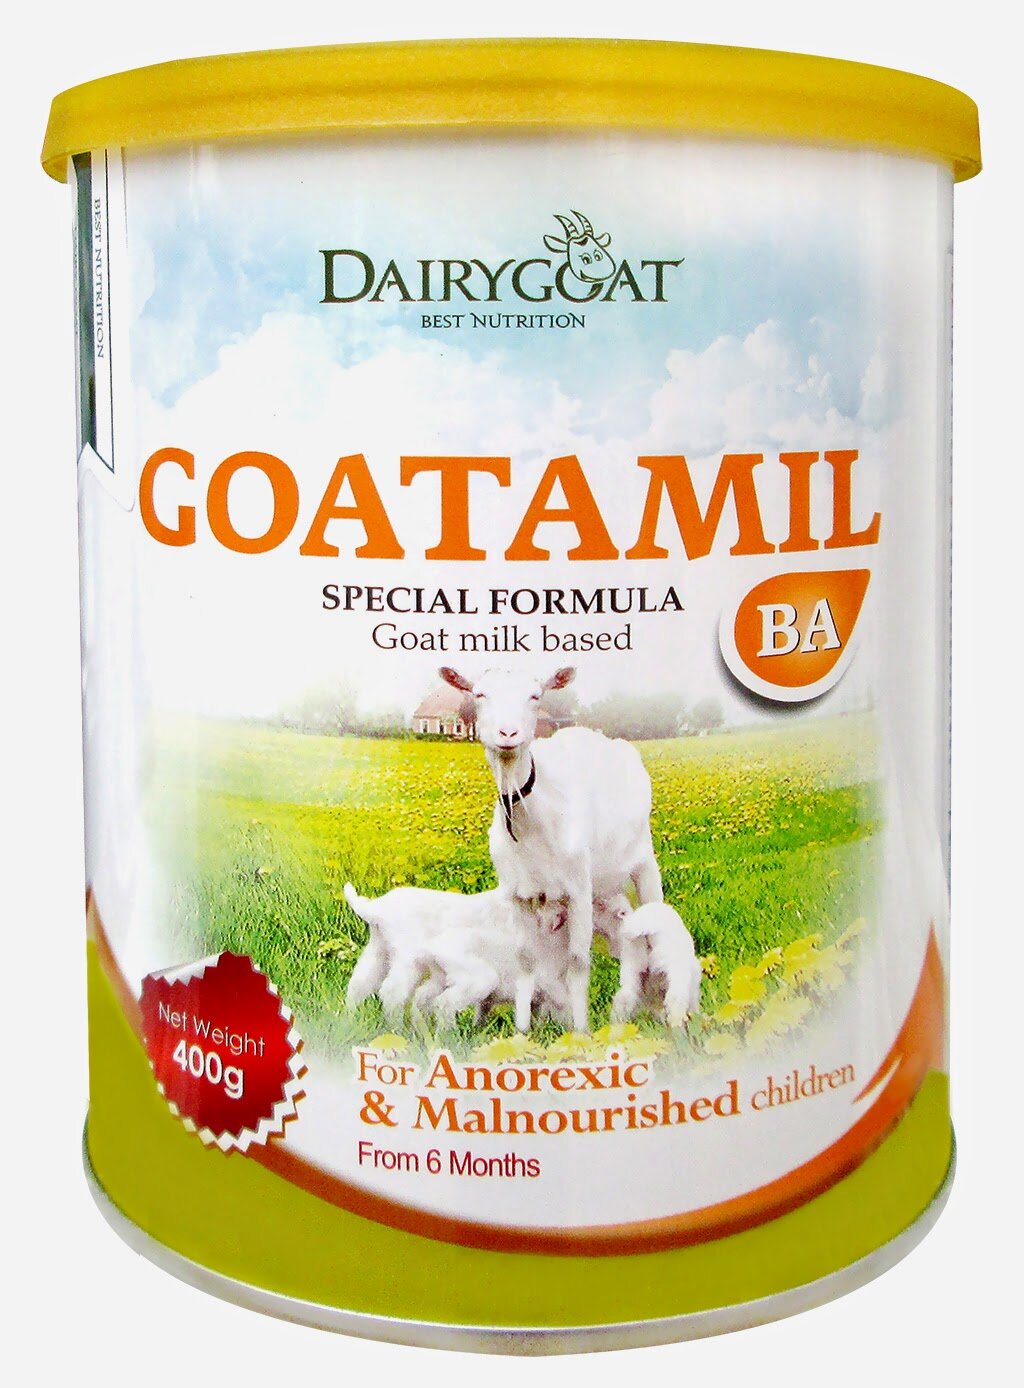 Sữa dê Goatamil BA sữa đặc biệt dành cho trẻ biếng ăn, suy dinh dưỡng